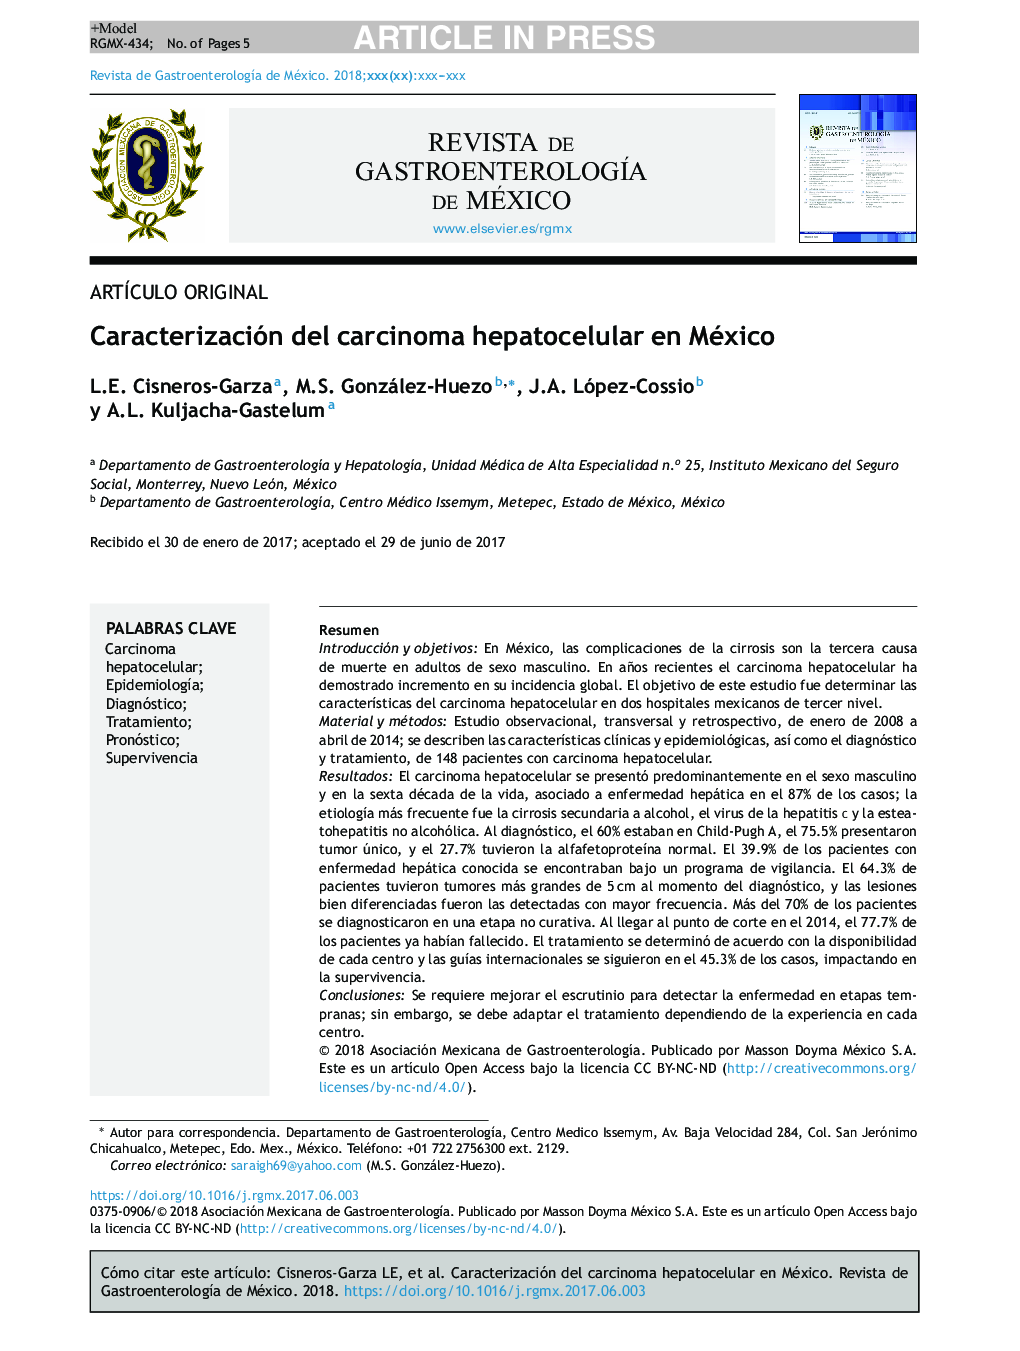 Caracterización del carcinoma hepatocelular en México